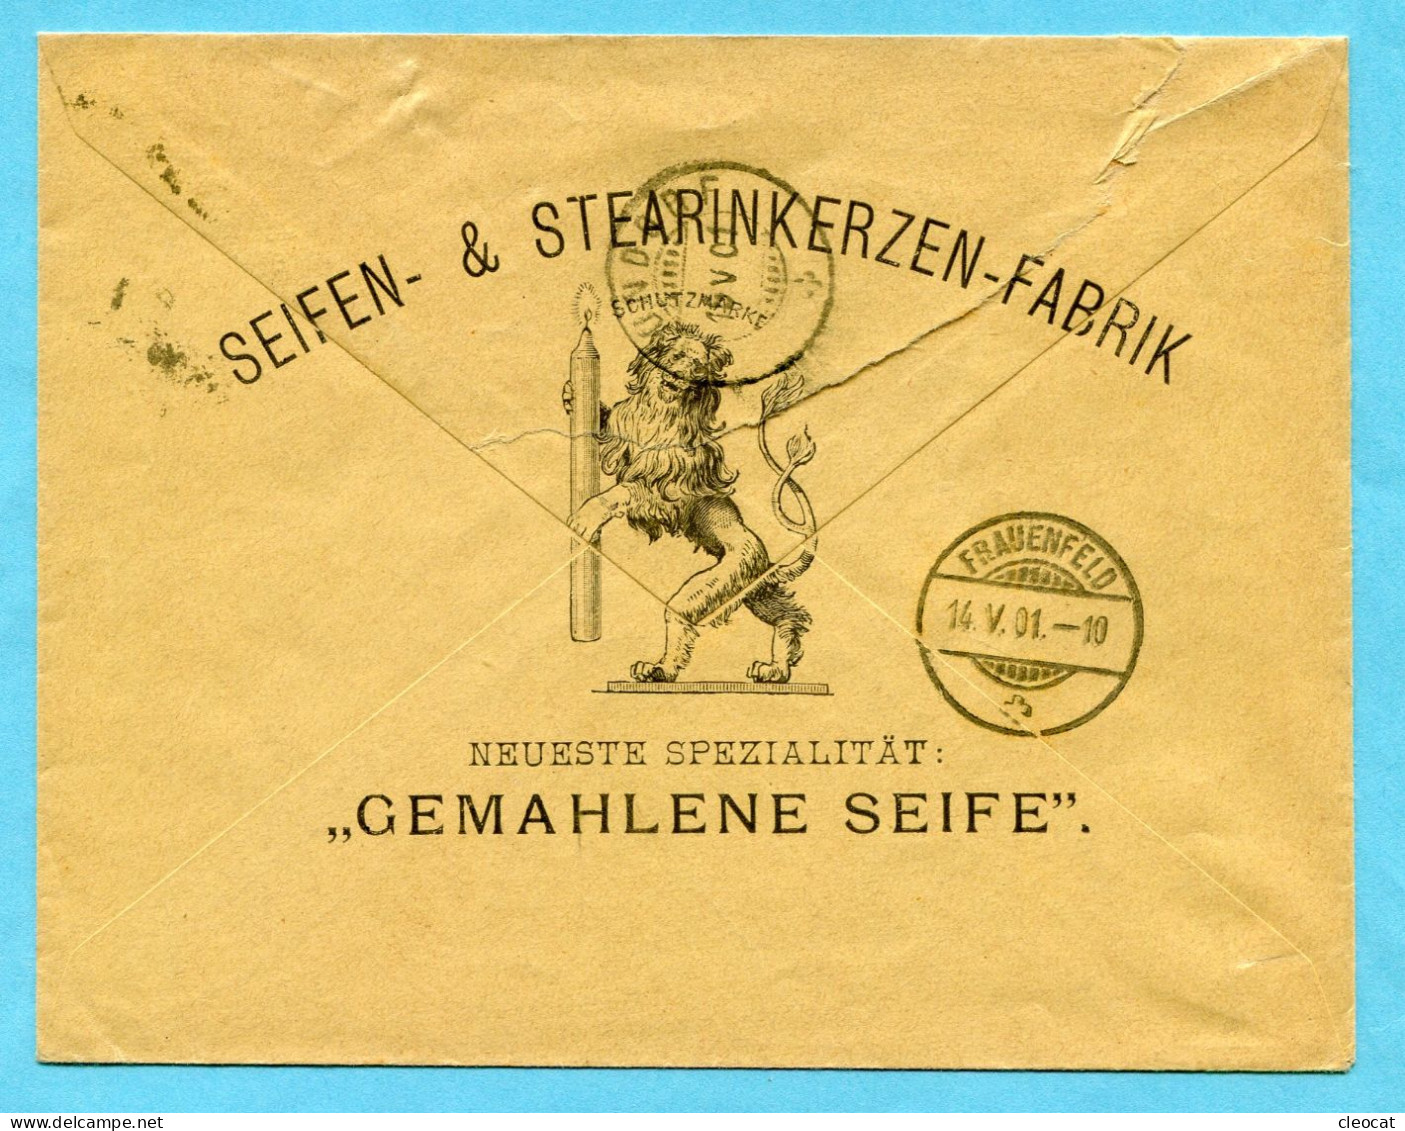 Illustrierter Brief Von Winterthur Nach Thundorf 1901 - Absender: Sträuli & Cie. - Covers & Documents